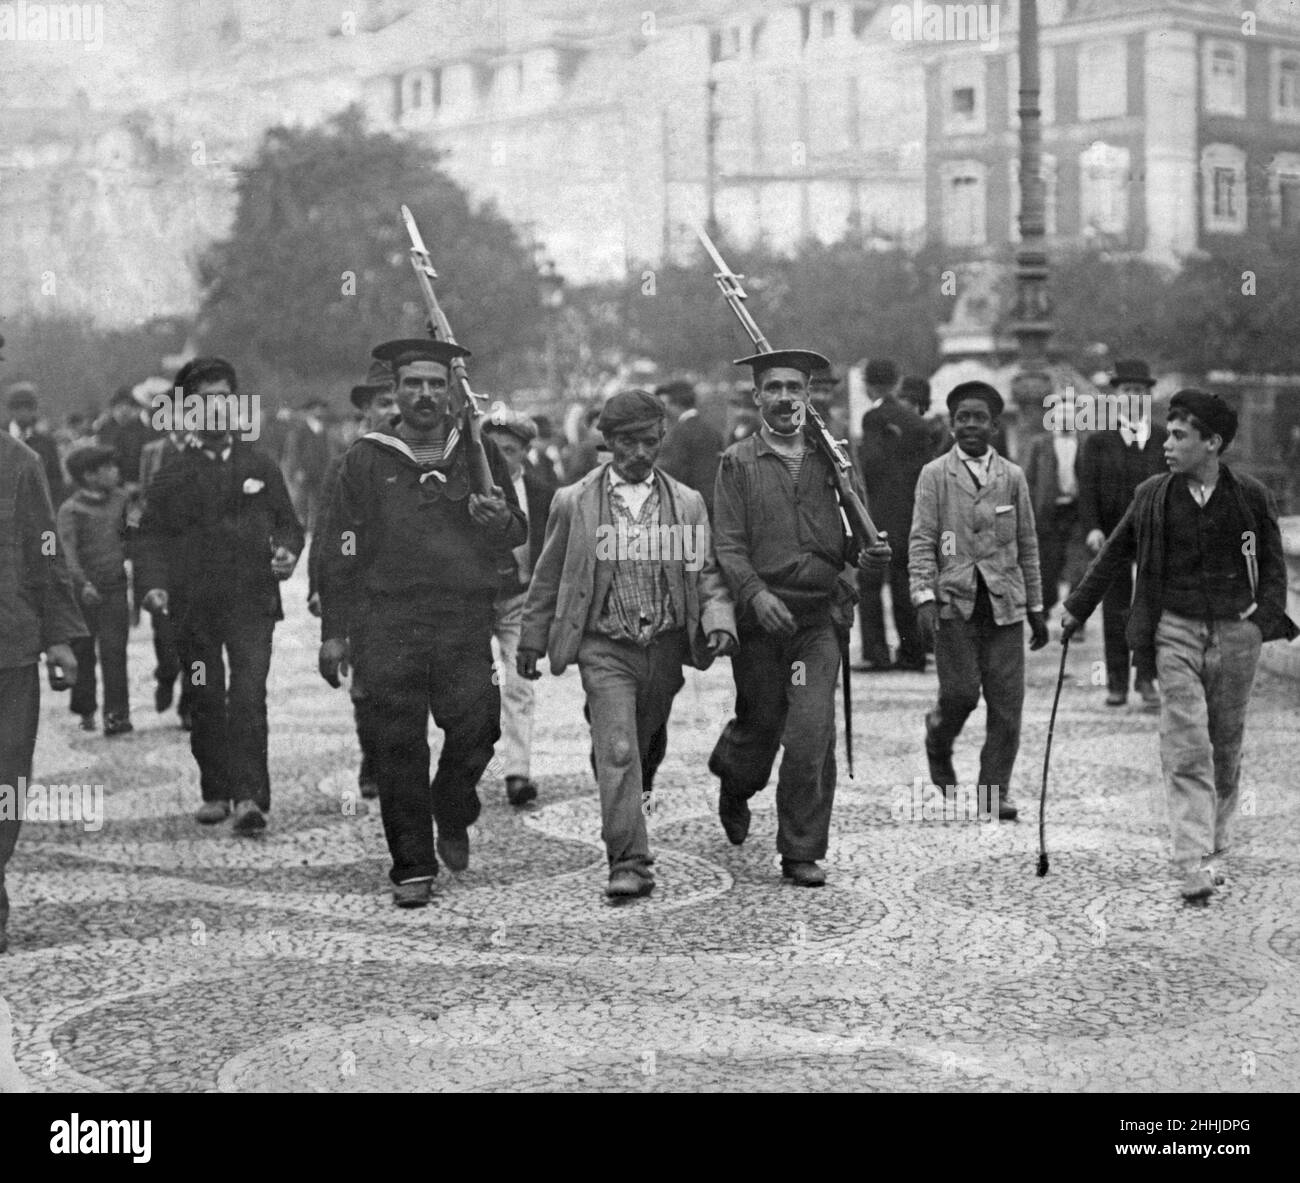 Portugal Oktober 5th Revolution 1910 zwei portugiesische Matrosen eskortieren einen royalistischen Gefangenen durch die Straßen von Lissabon nach schweren Kämpfen zwischen republikanischen und royalistischen Kräften während der Revolution. 5th. Oktober 1910 Stockfoto